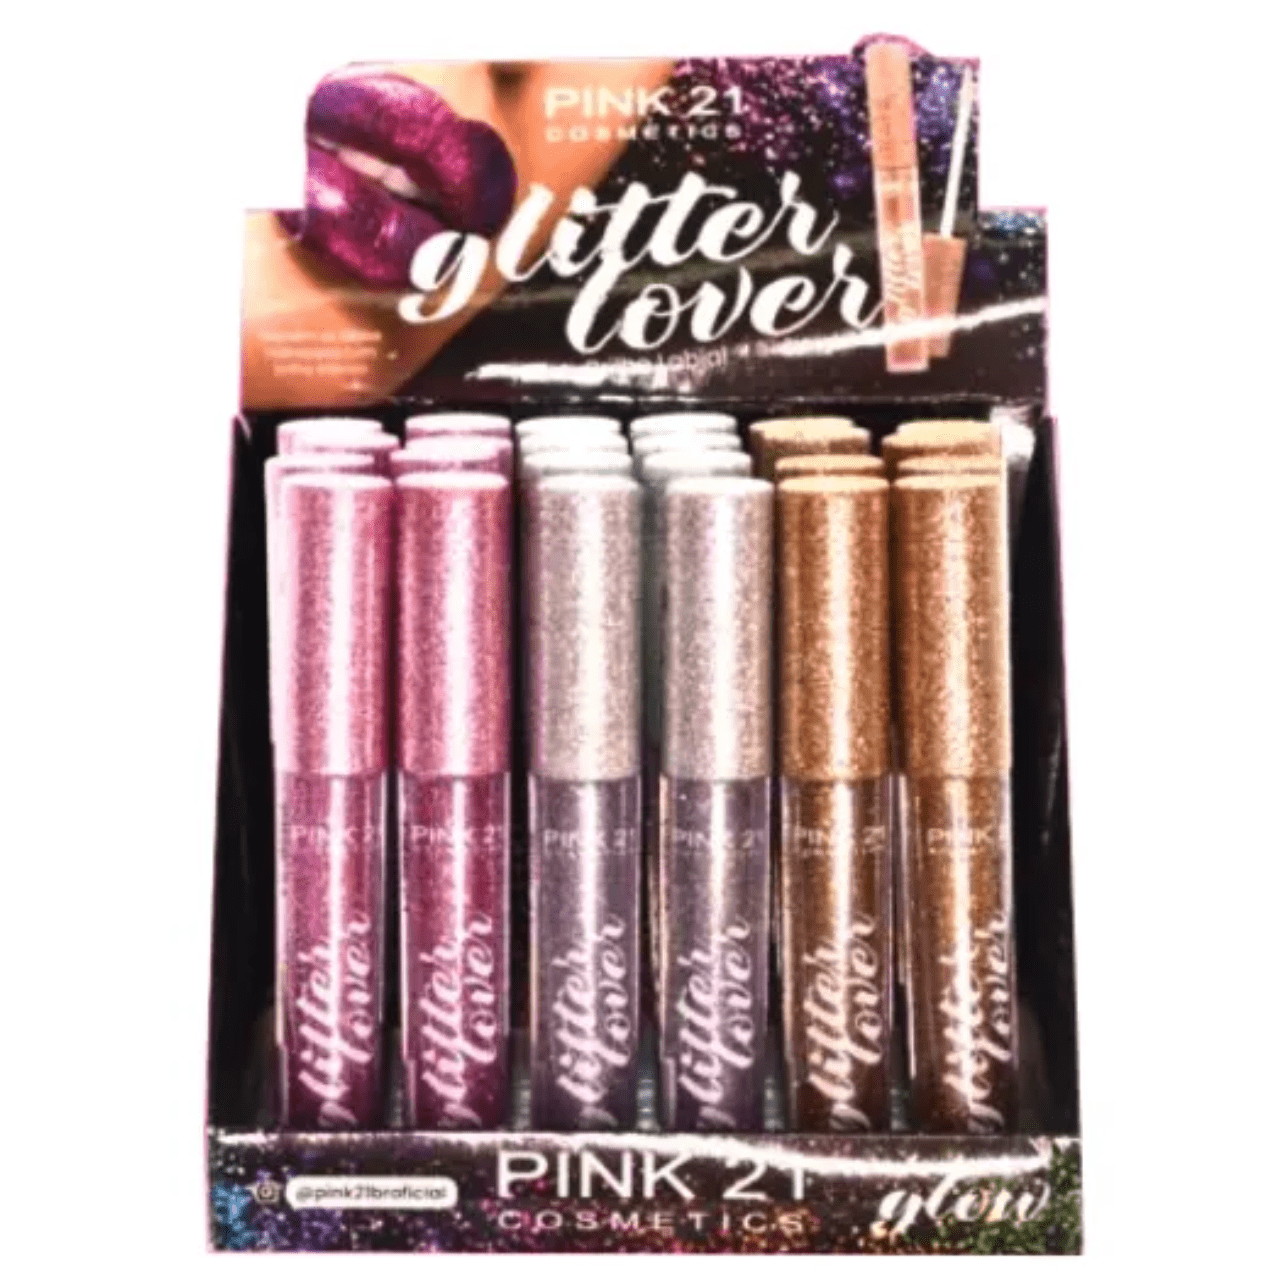  Lip Gloss Glitter Lover Pink 21 Efeito Glitter 24UN